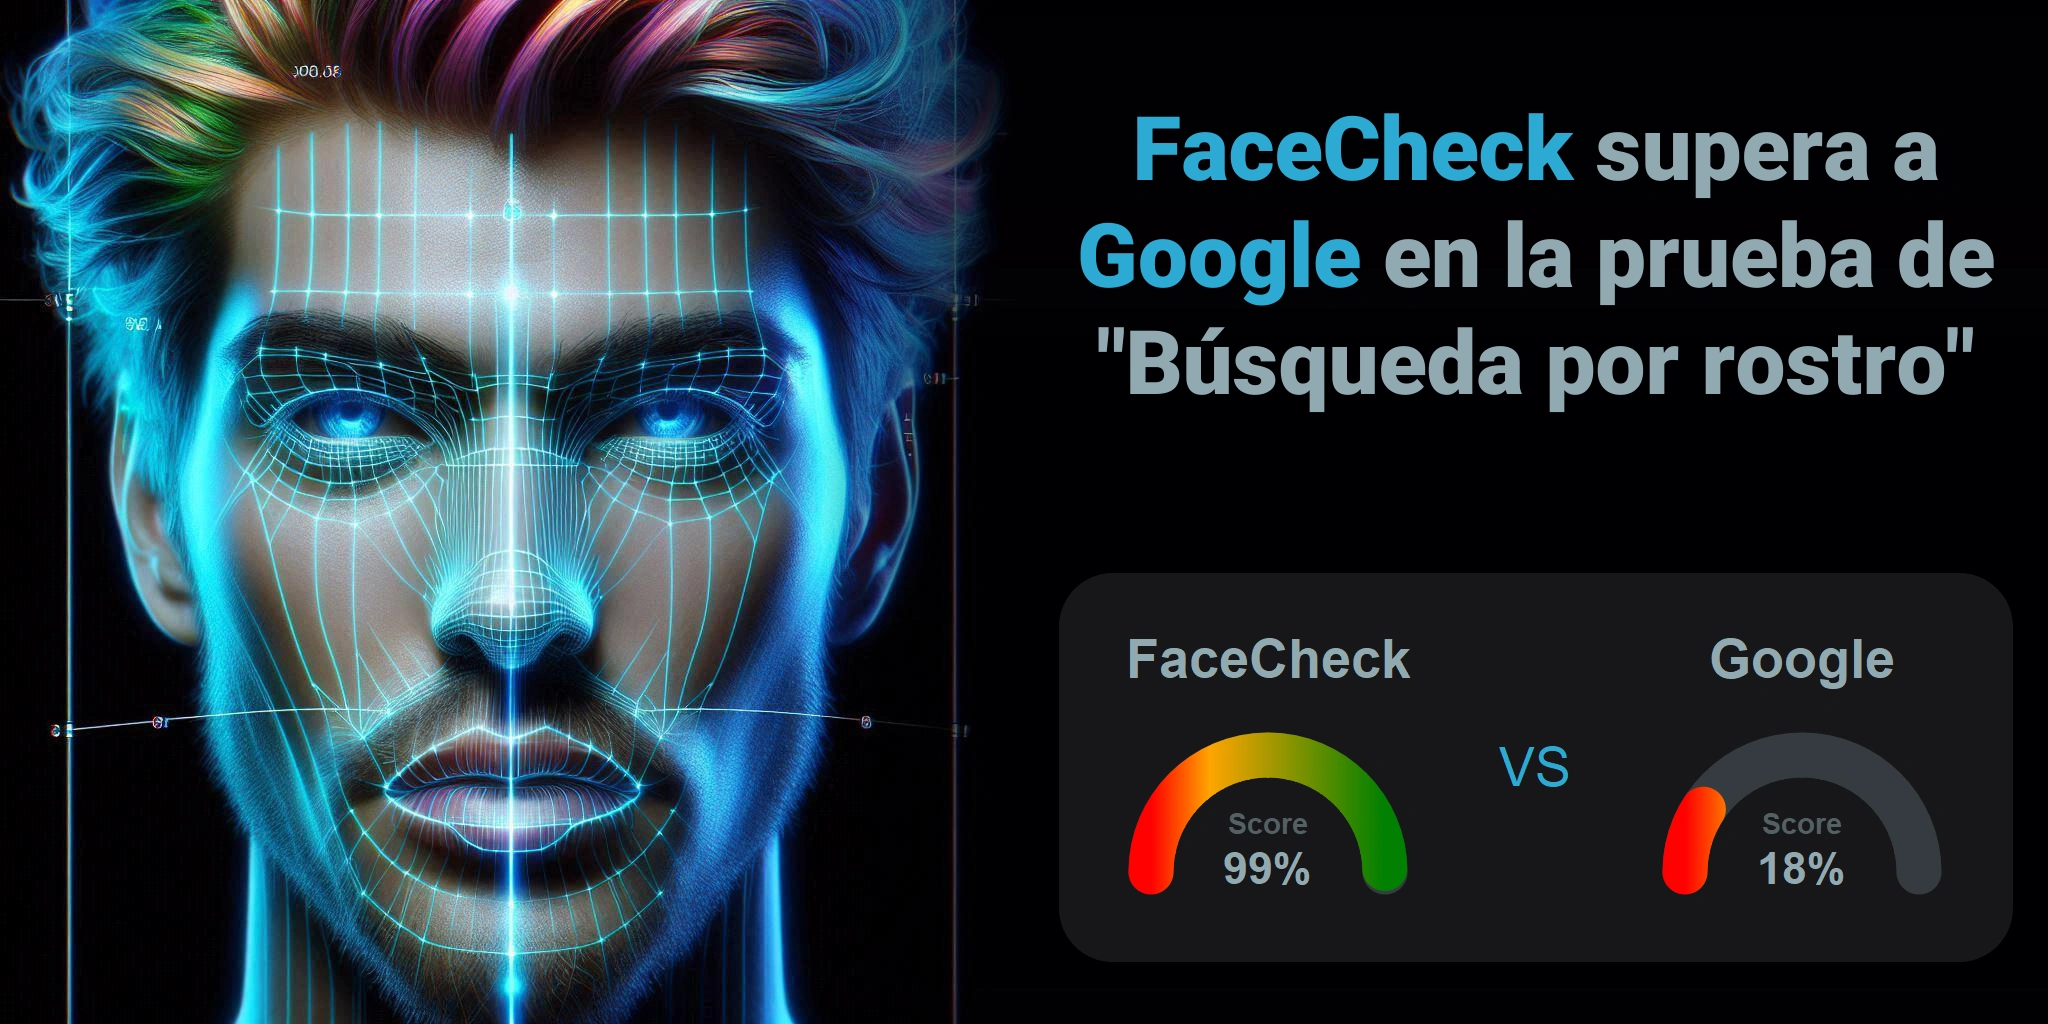 ¿Cuál es mejor para la búsqueda facial: <br>FaceCheck o Google?